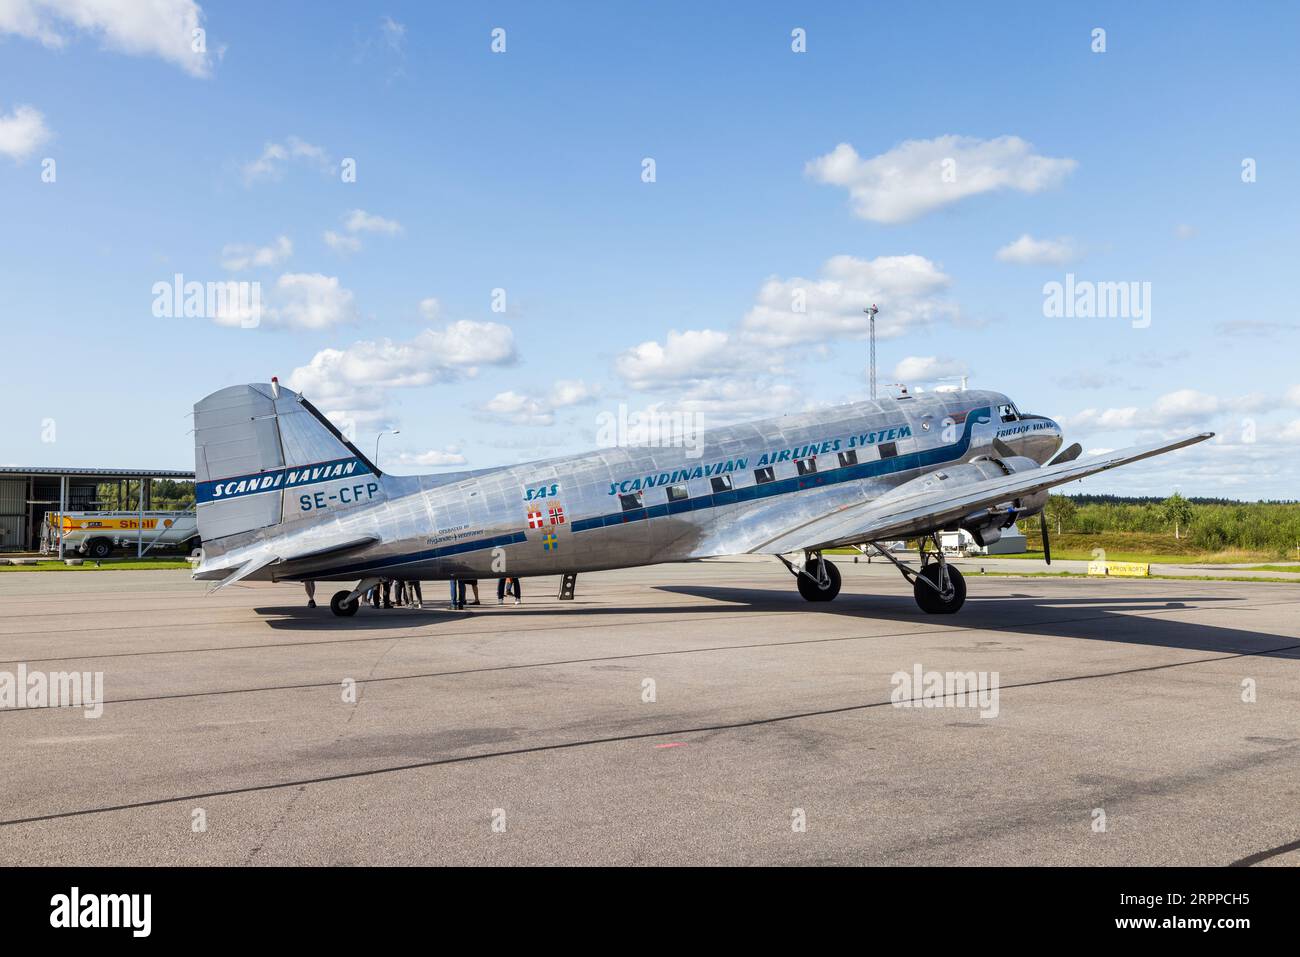 Se-CFP - Douglas DC-3, Daisy, all'aeroporto di Örebro, Örebro, Svezia. Il DC-3 Daisy Aircraft è stato prodotto nel 1943 ed è un vero veterano. Ha partecipato alla seconda guerra mondiale, dove ha partecipato, tra le altre cose, agli atterraggi aerei del D-Day il 6 giugno 1944. Foto Stock